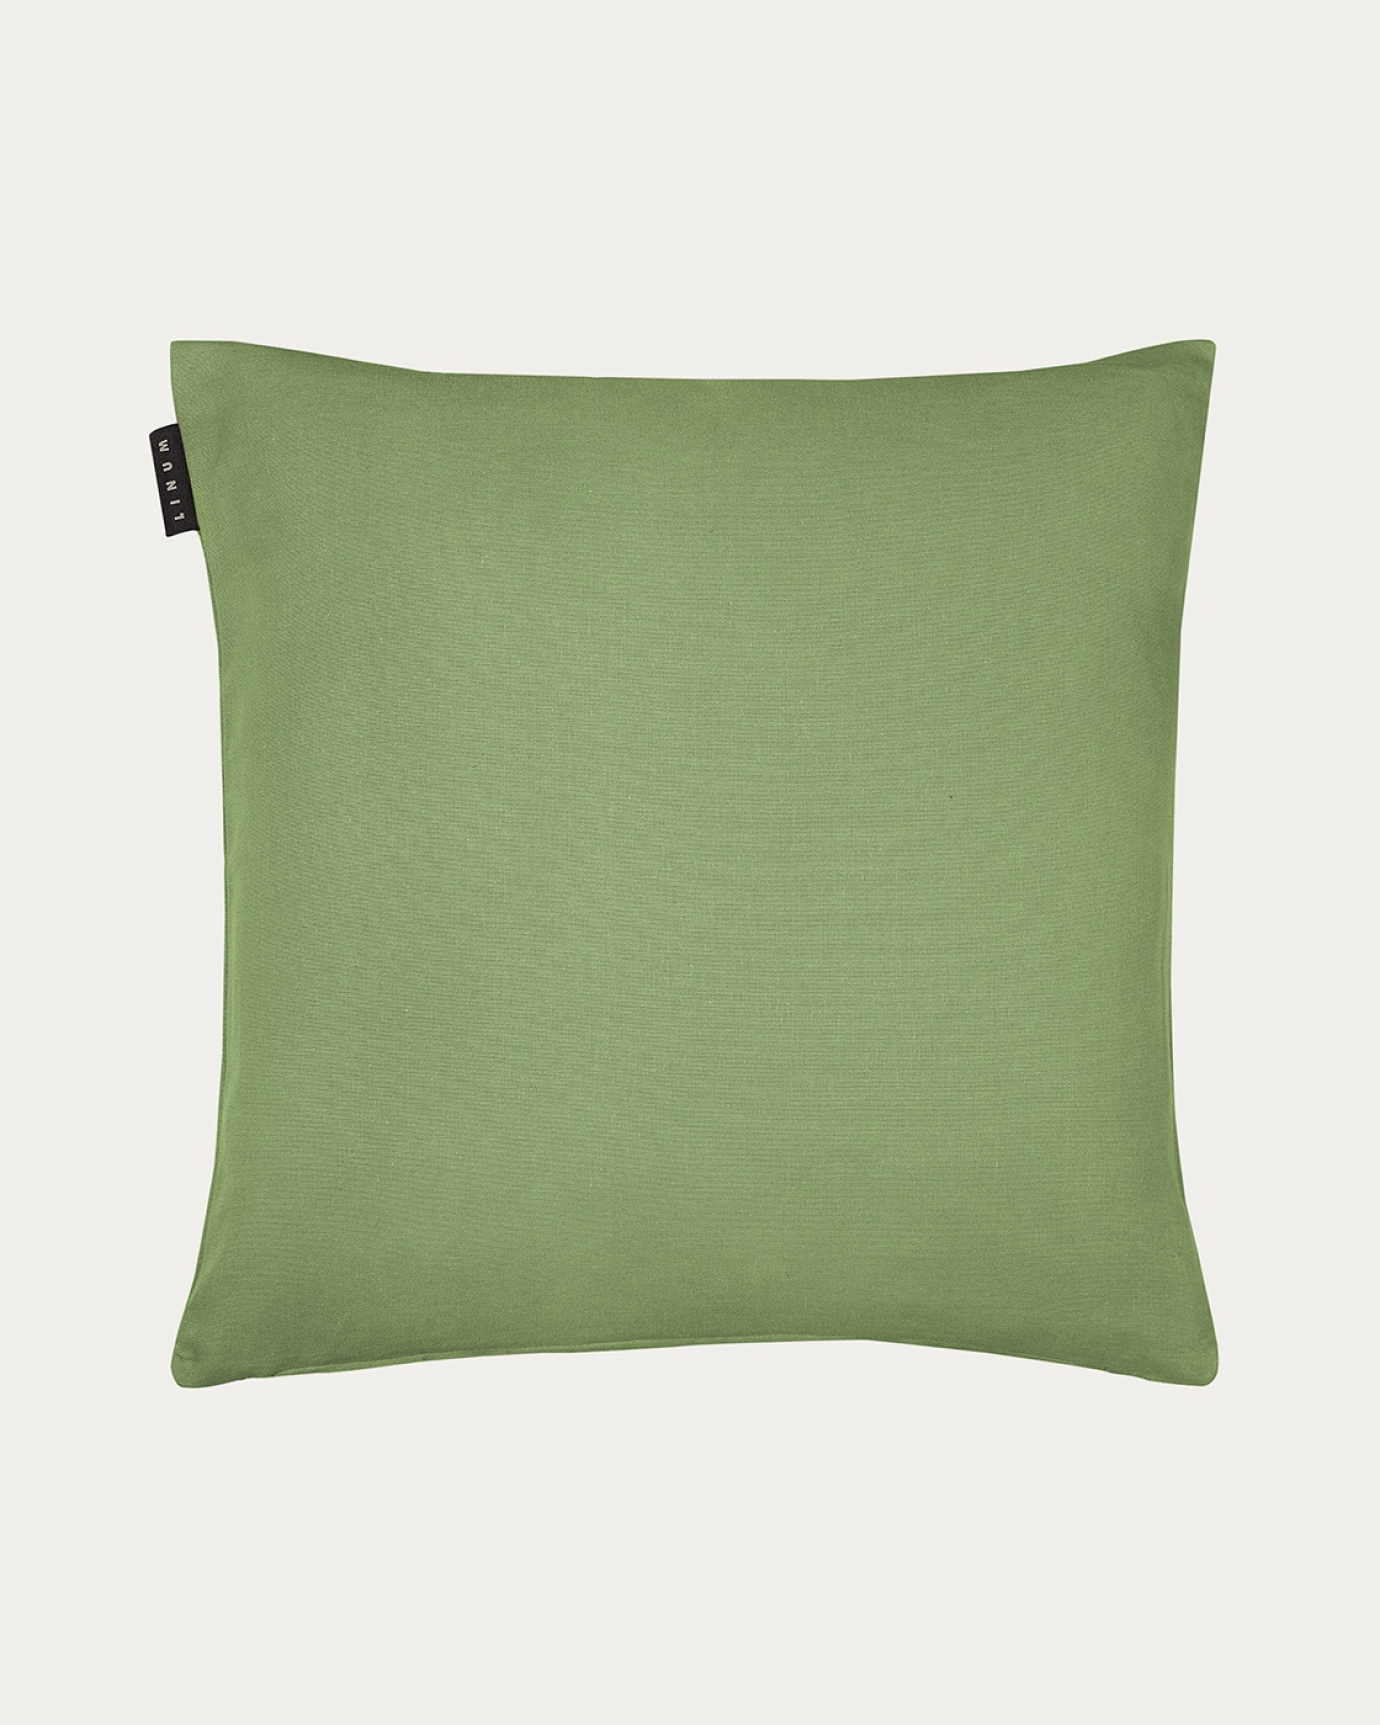 Immagine prodotto verde muschio ANNABELL copricuscini in morbido cotone di LINUM DESIGN. Dimensioni 50x50 cm.